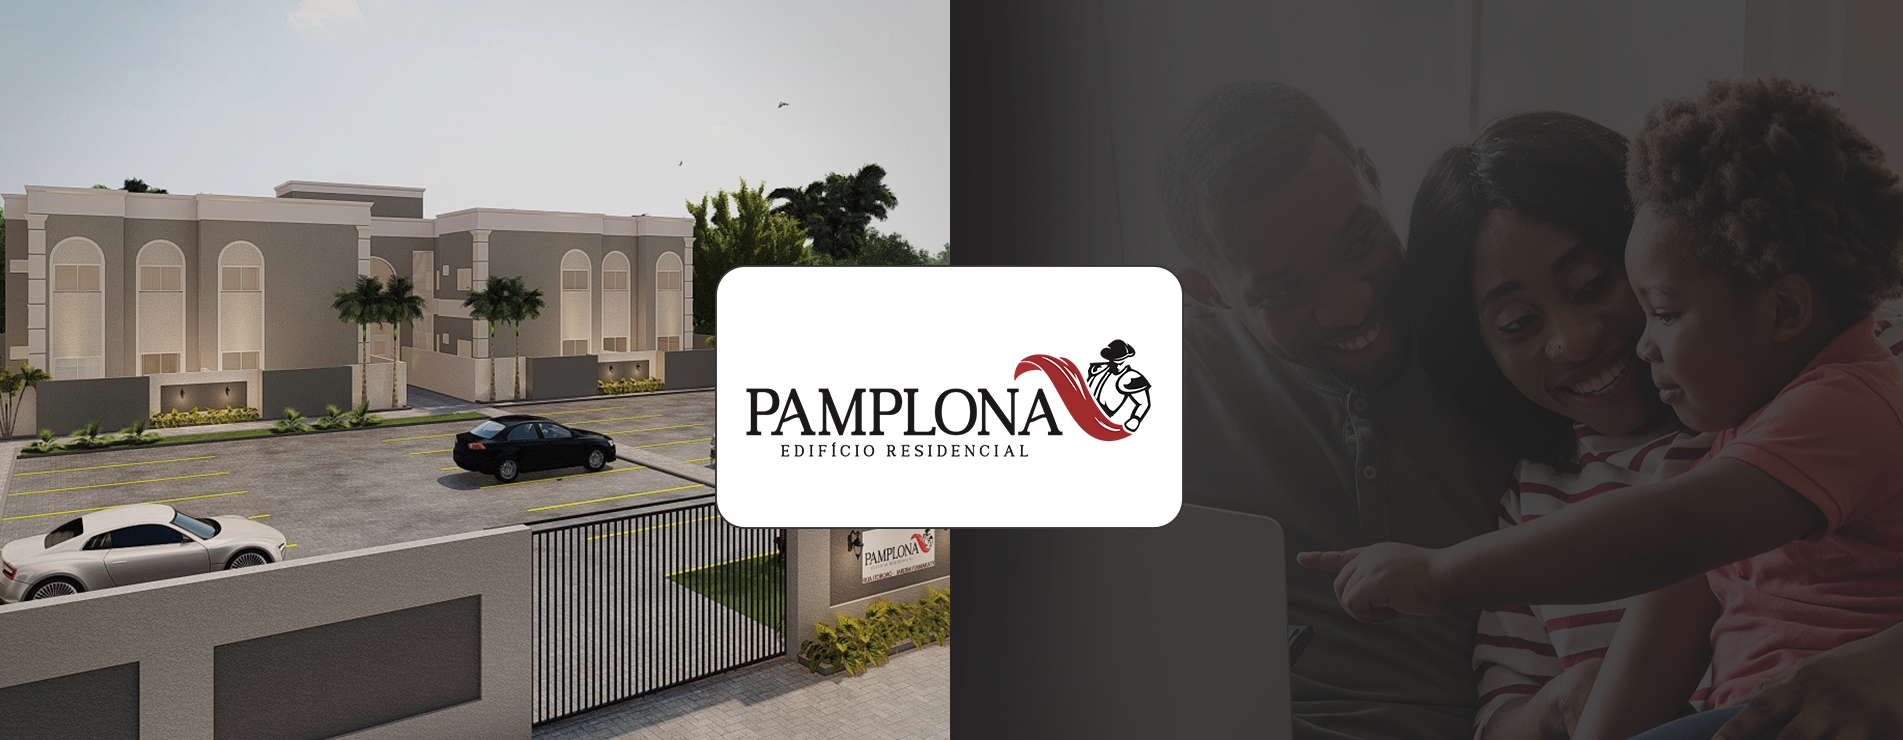 PAMPLONA | Edifício Residencial